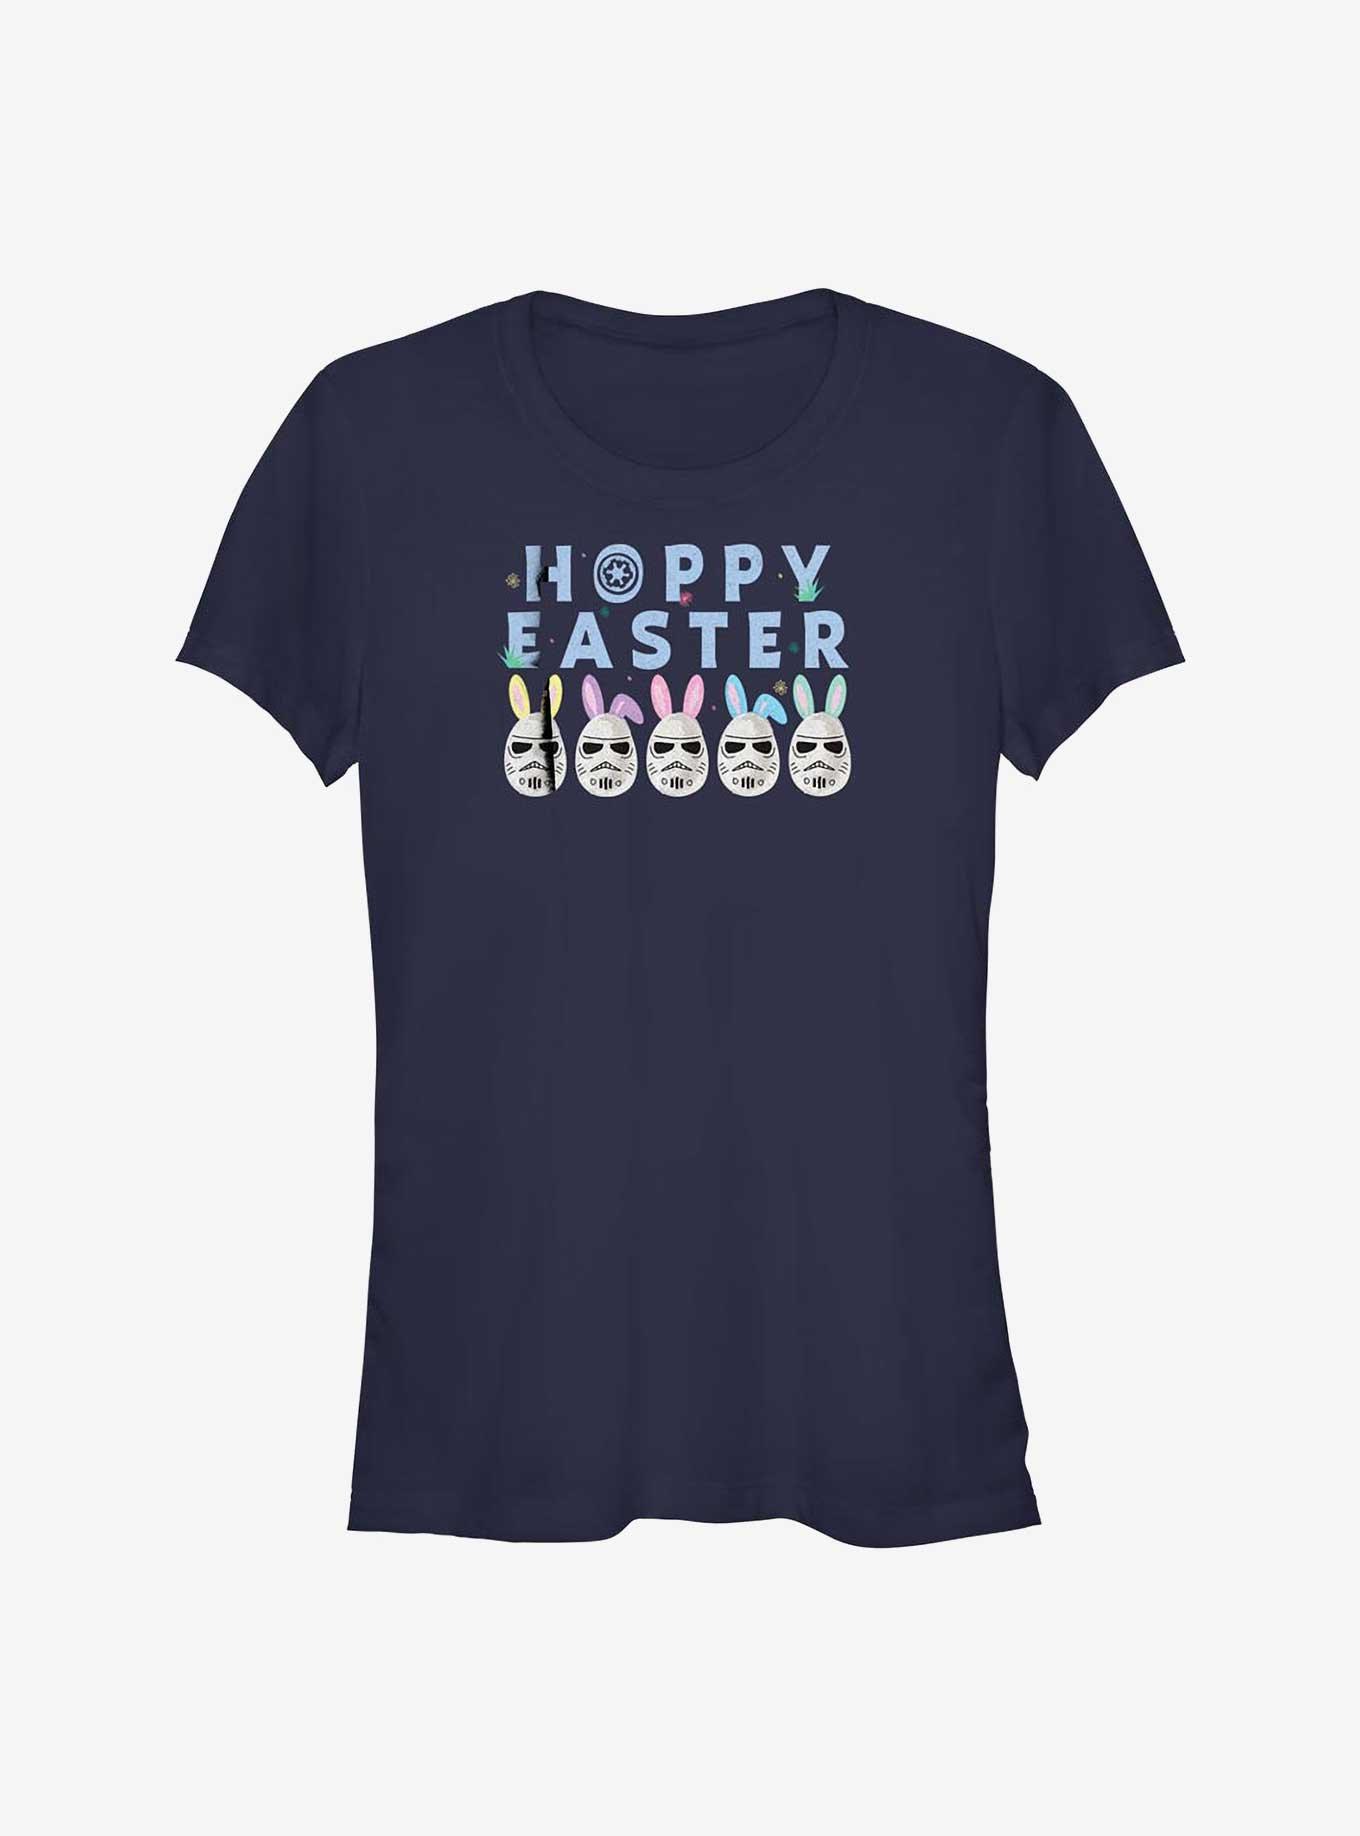 Star Wars Hoppy Easter Egg Stormtrooper Girls T-Shirt